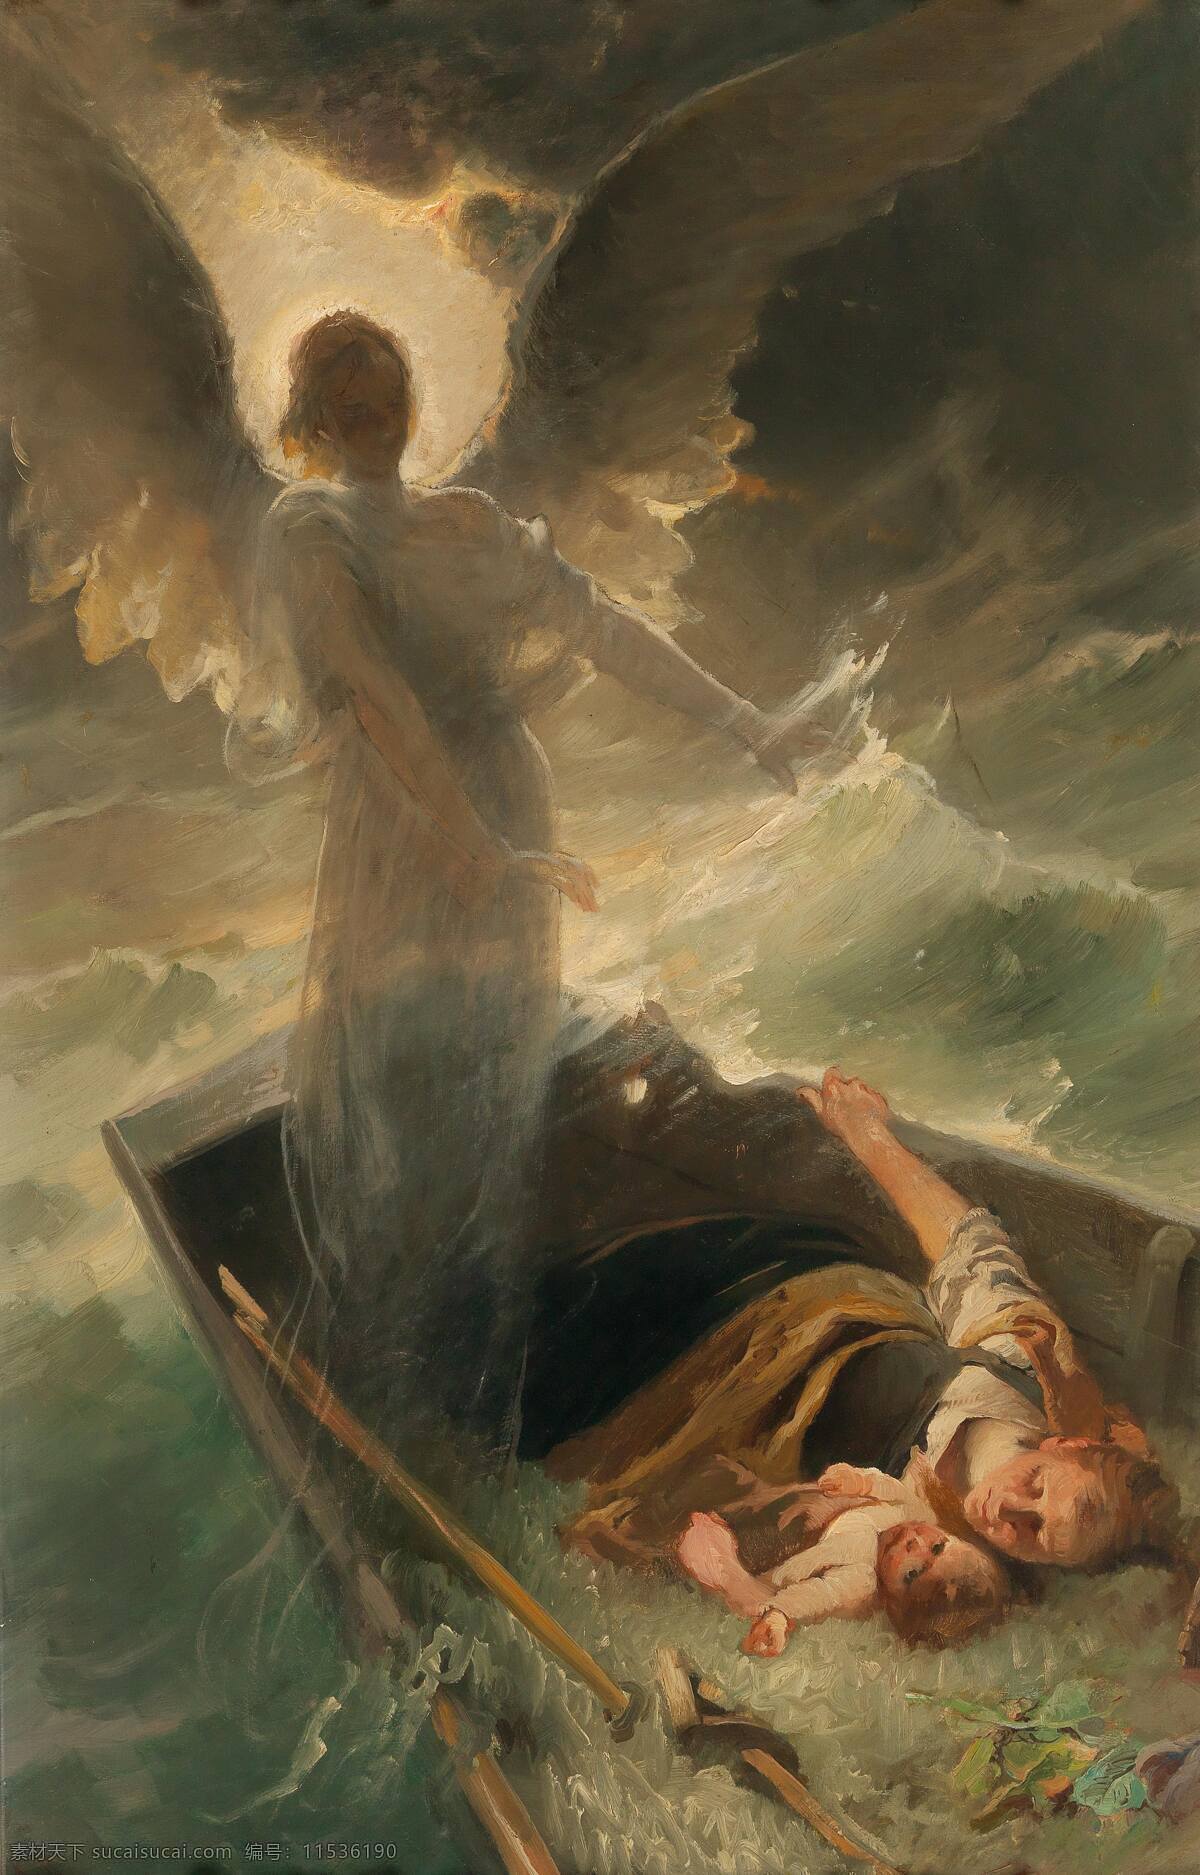 卡尔183 劳普作品 德国画家 圣经故事 海难 一对母子 凶多吉少 天使降临 搭救 19世纪油画 油画 文化艺术 绘画书法